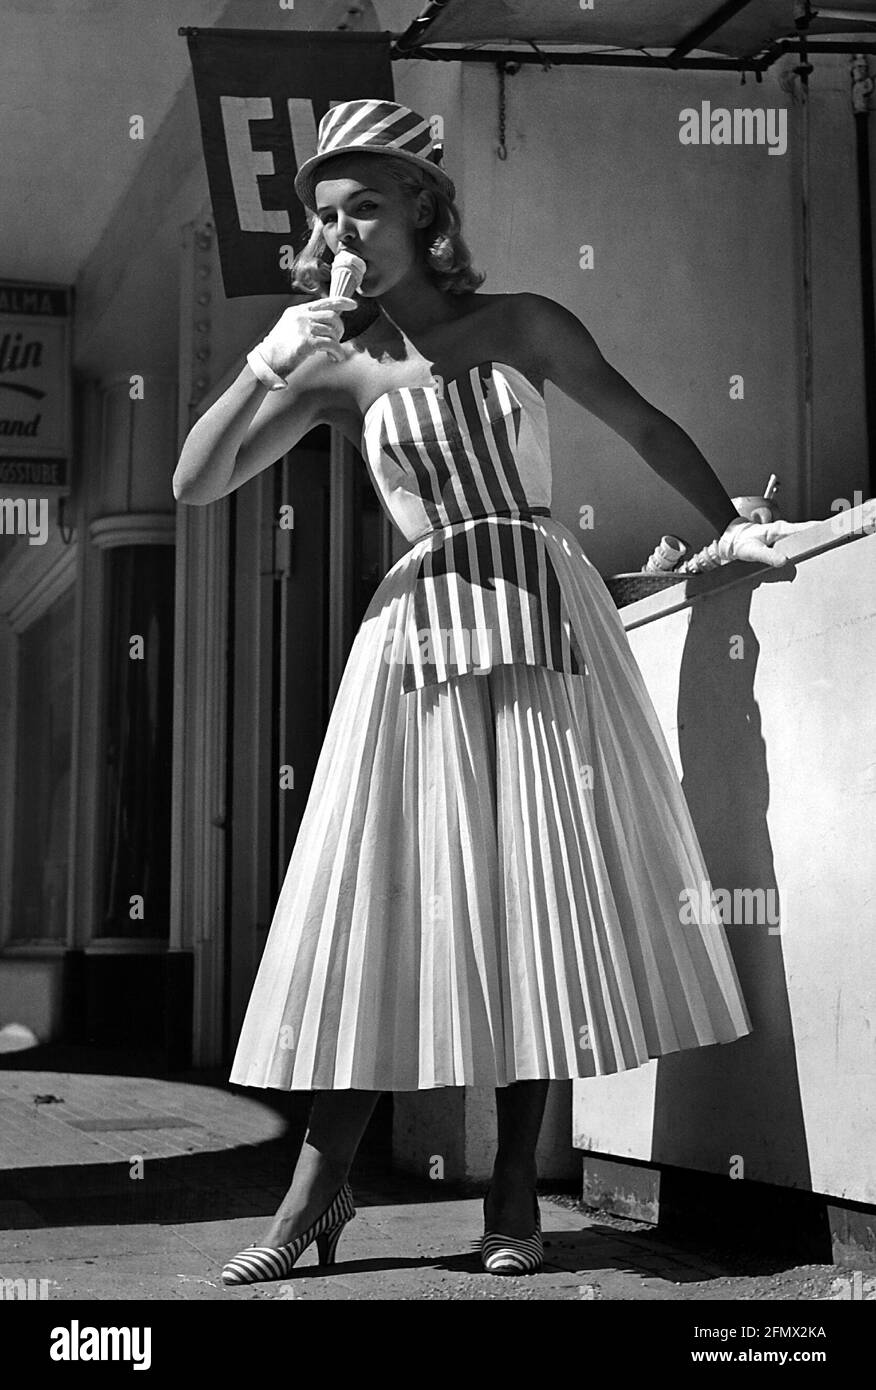 Mode, 50er Jahre, Damenmode, Frau mit Hut und ähnlichem Sommerkleid, Eis essen, ZUSÄTZLICHE-RIGHTS-CLEARANCE-INFO-NOT-AVAILABLE Stockfoto